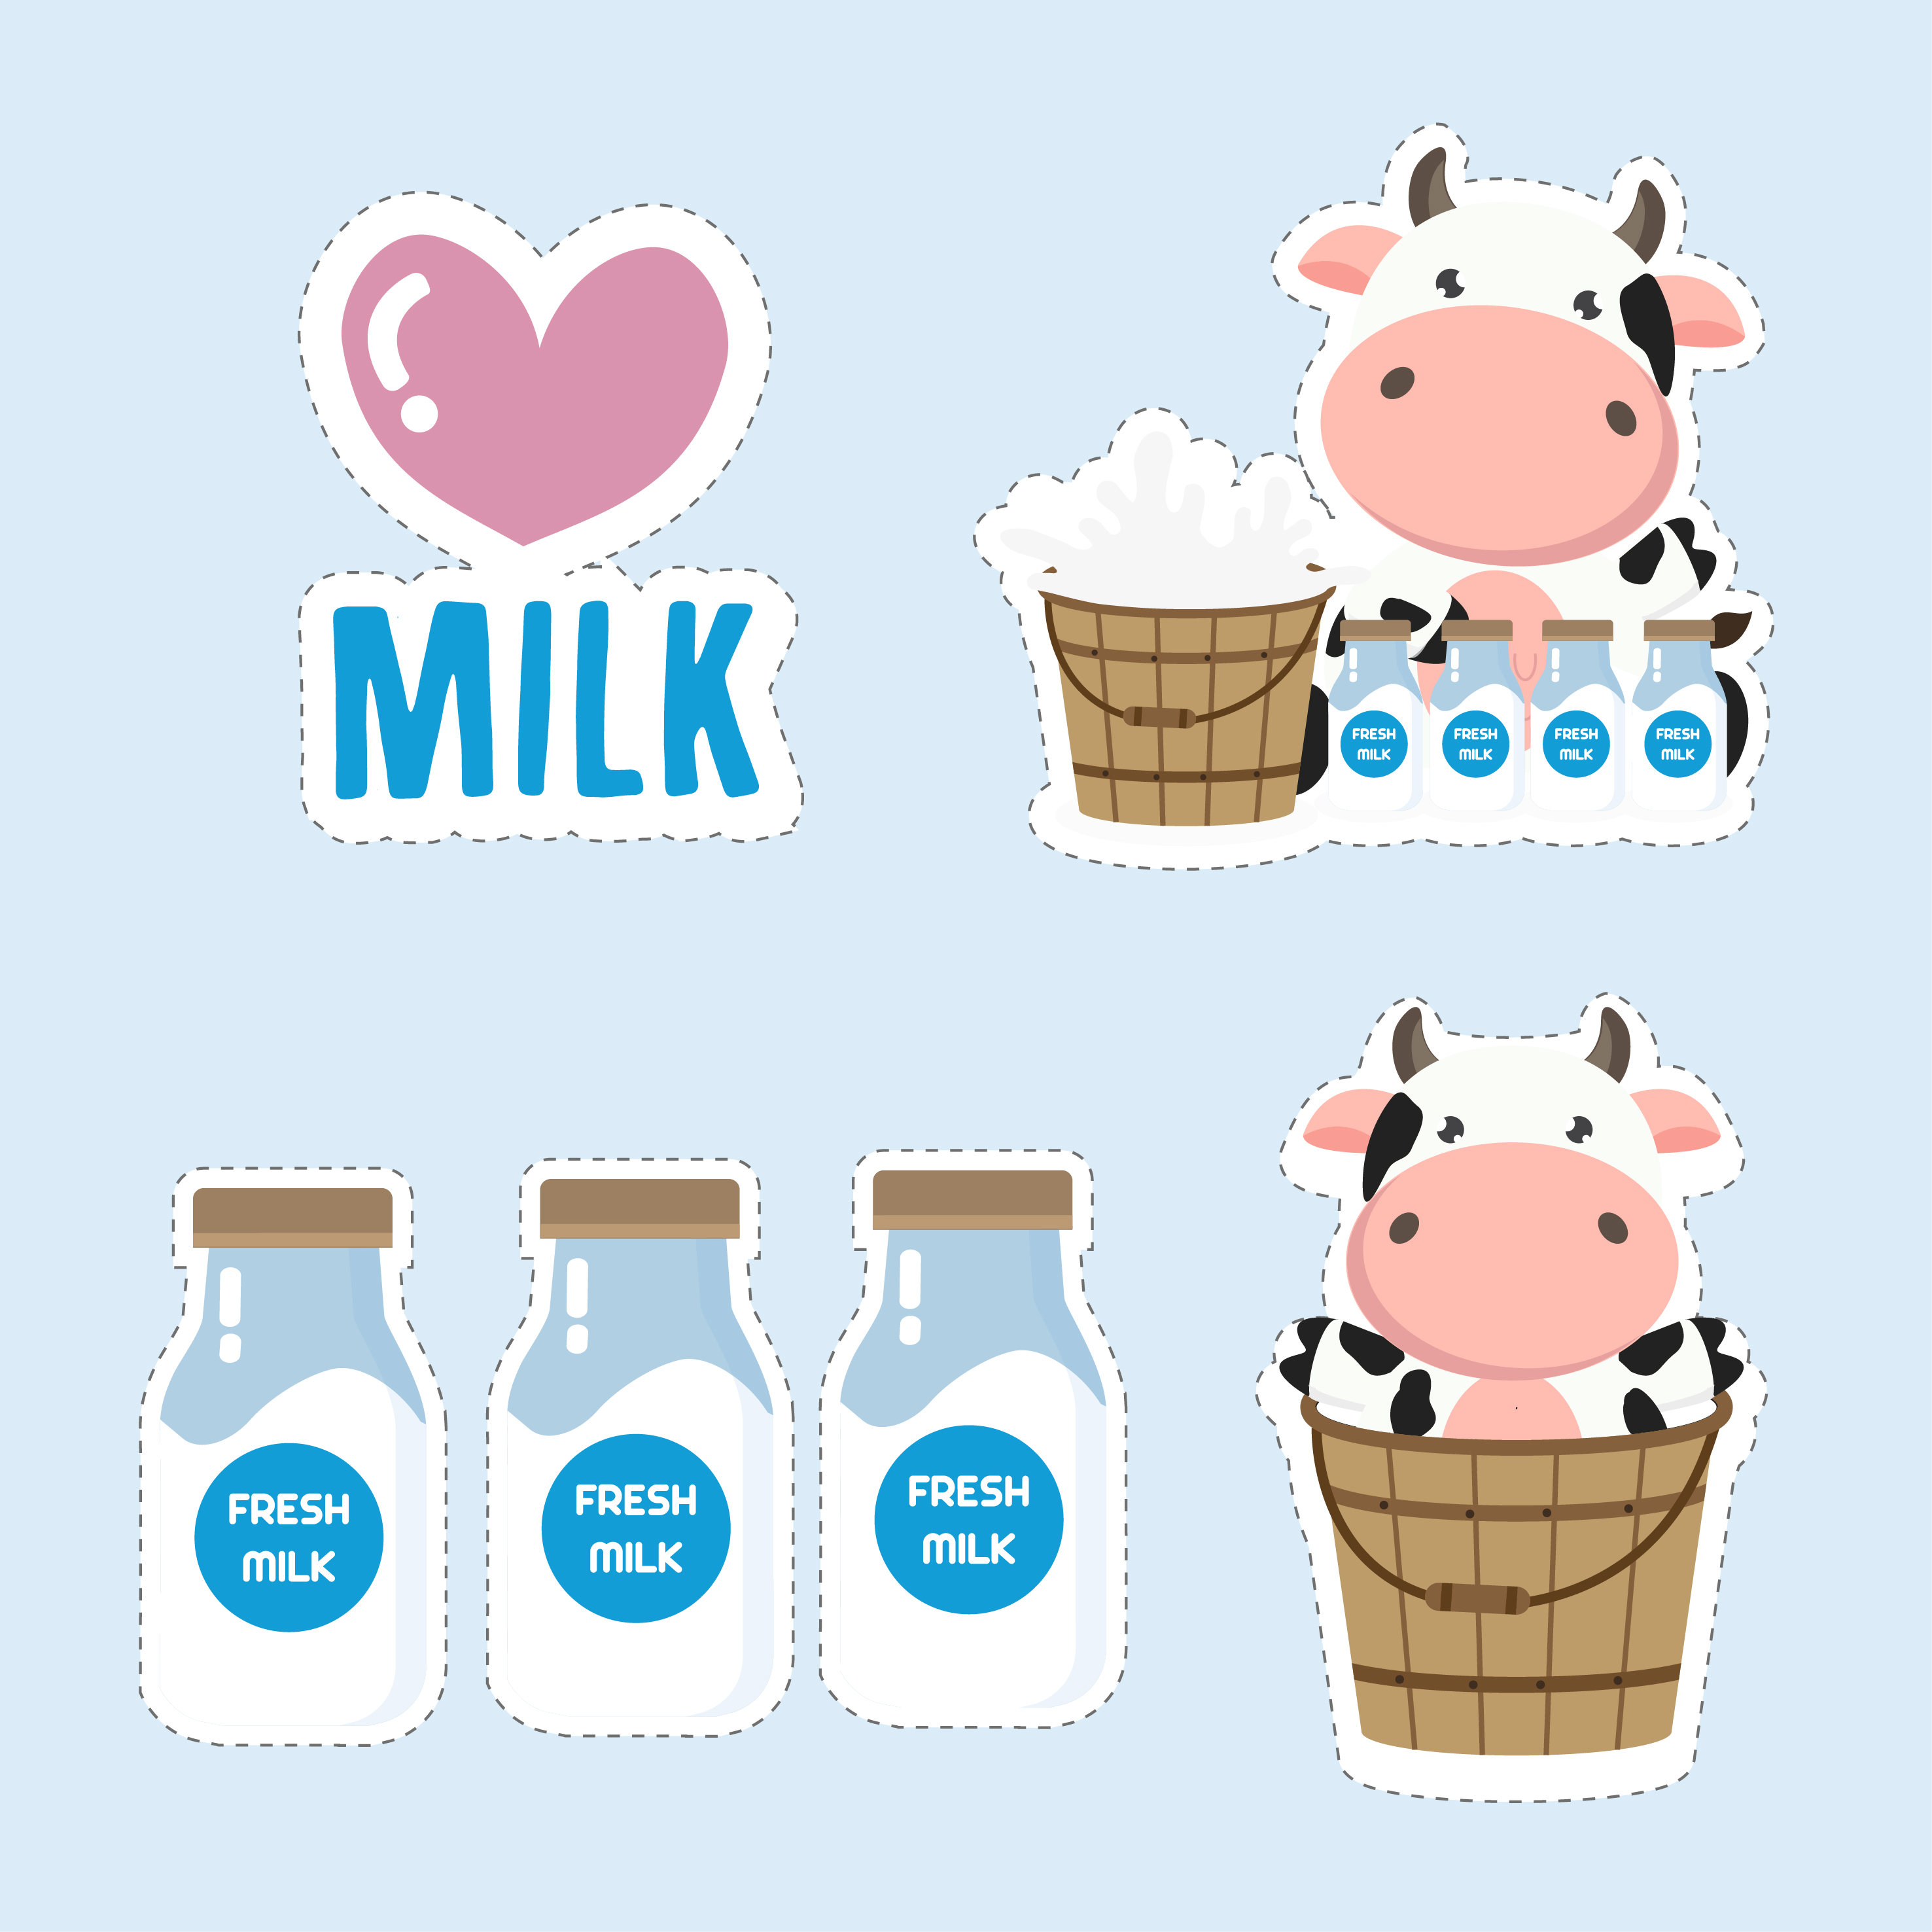 Little Cow And Milk Cartoon Cute Sticker Design 582913 Vector Art At Vecteezy